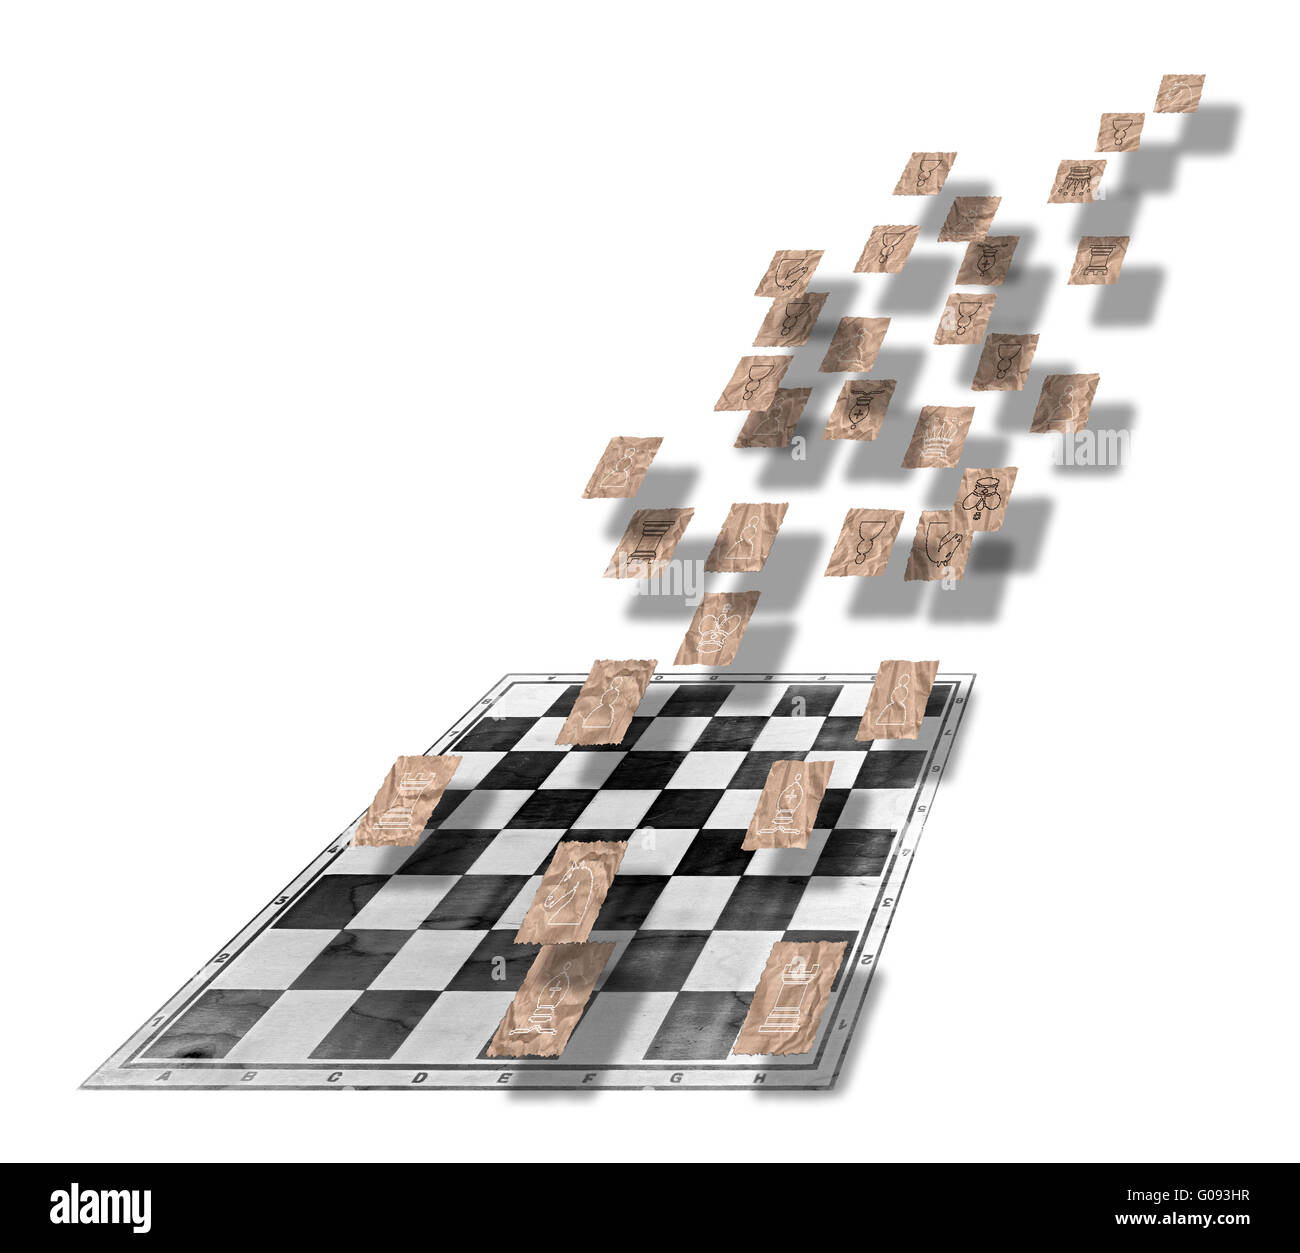 Figuras de ajedrez en trozos de papel arrugado marrón Foto de stock